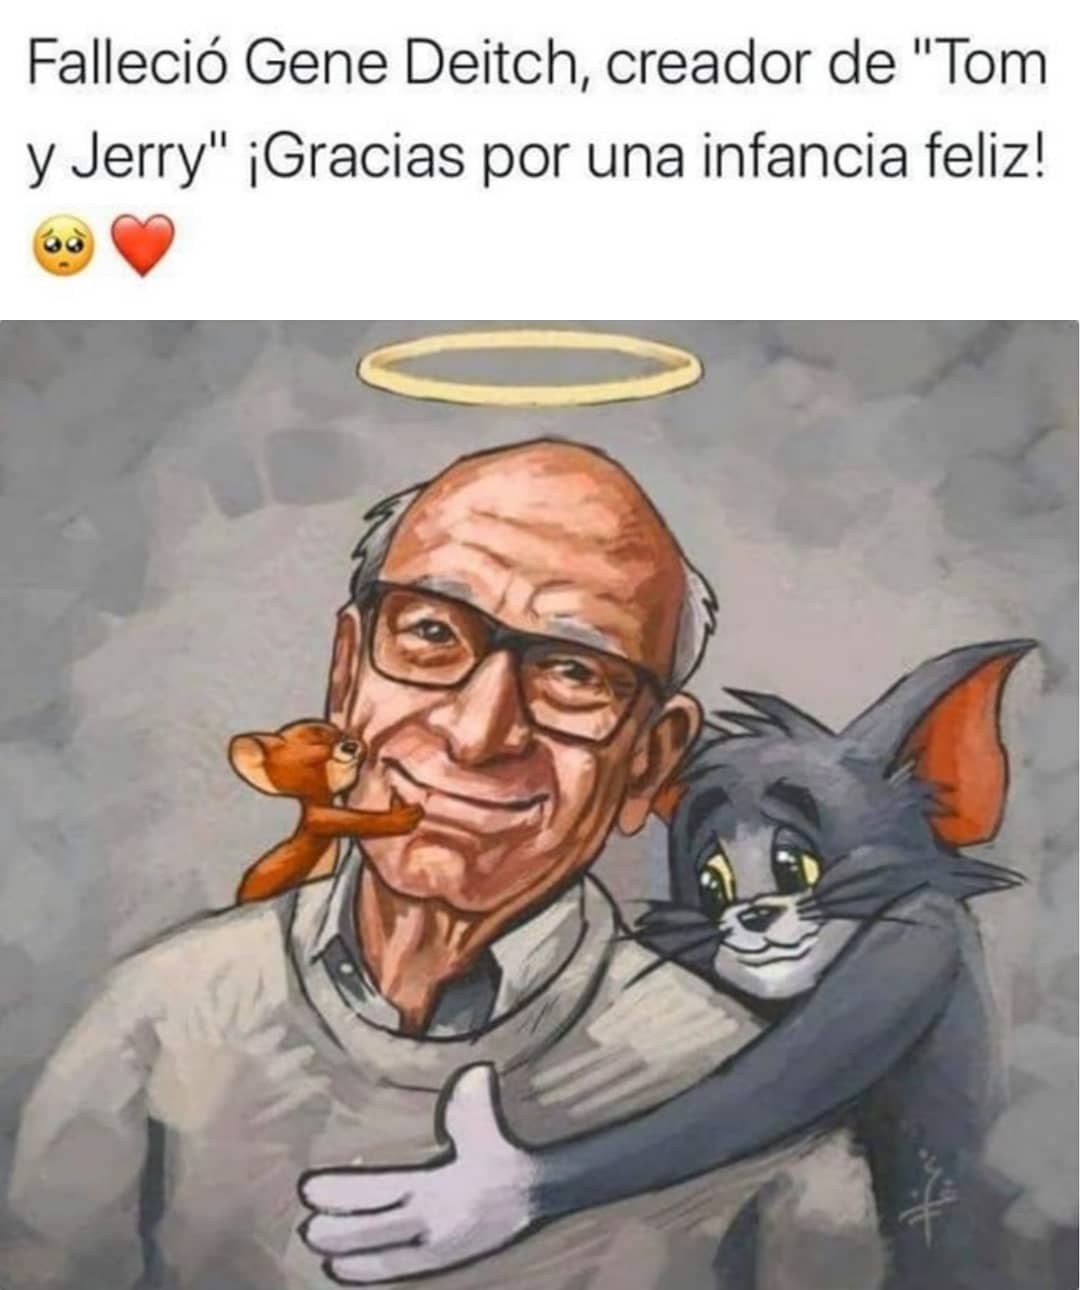 Falleció Gene Deitch, creador de "Tom y Jerry". ¡Gracias por una infancia feliz!